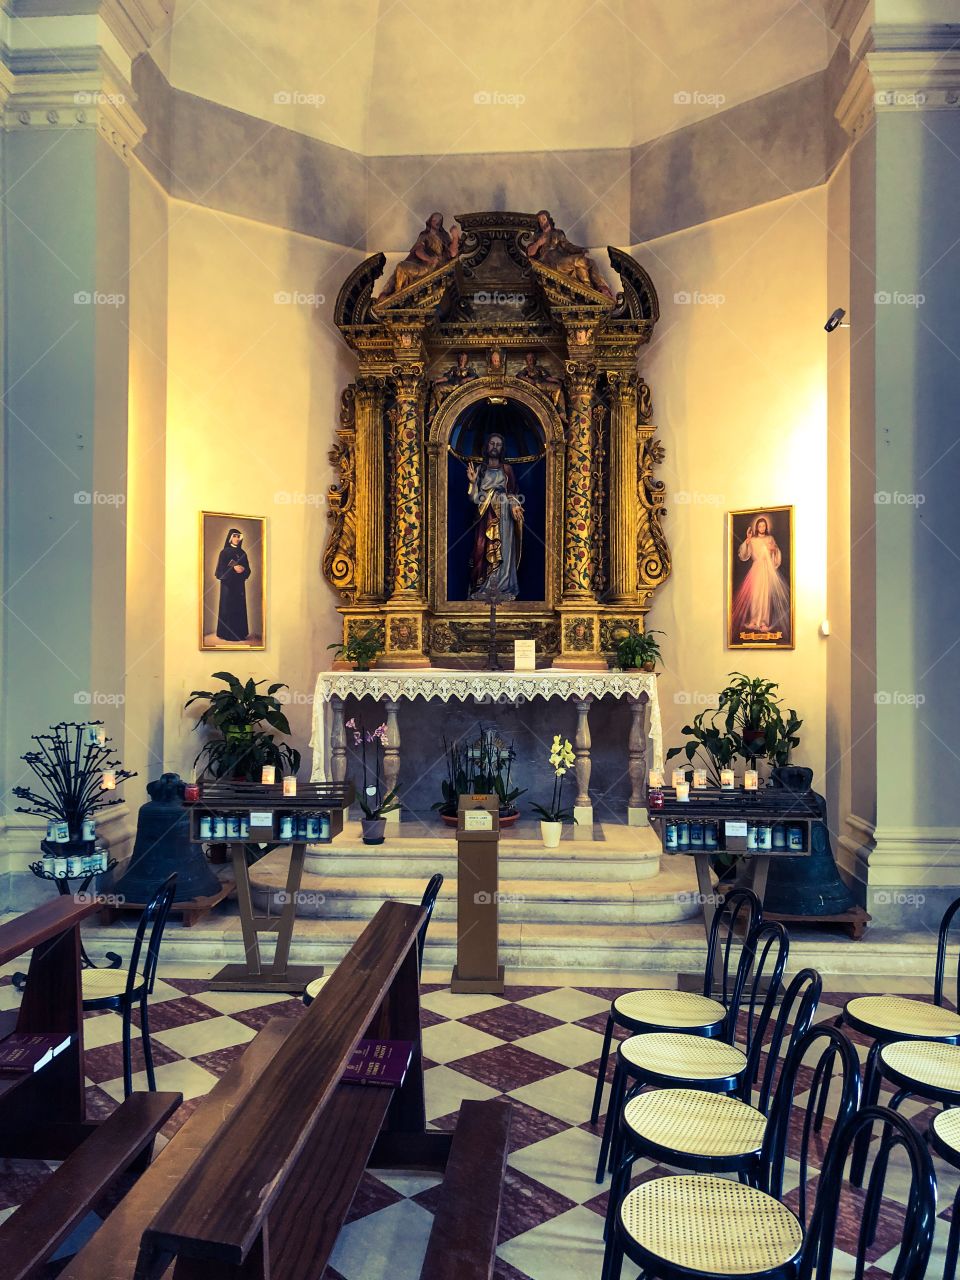 Side Altar of Madonna del Monte de Marsure church in Aviano, Italy